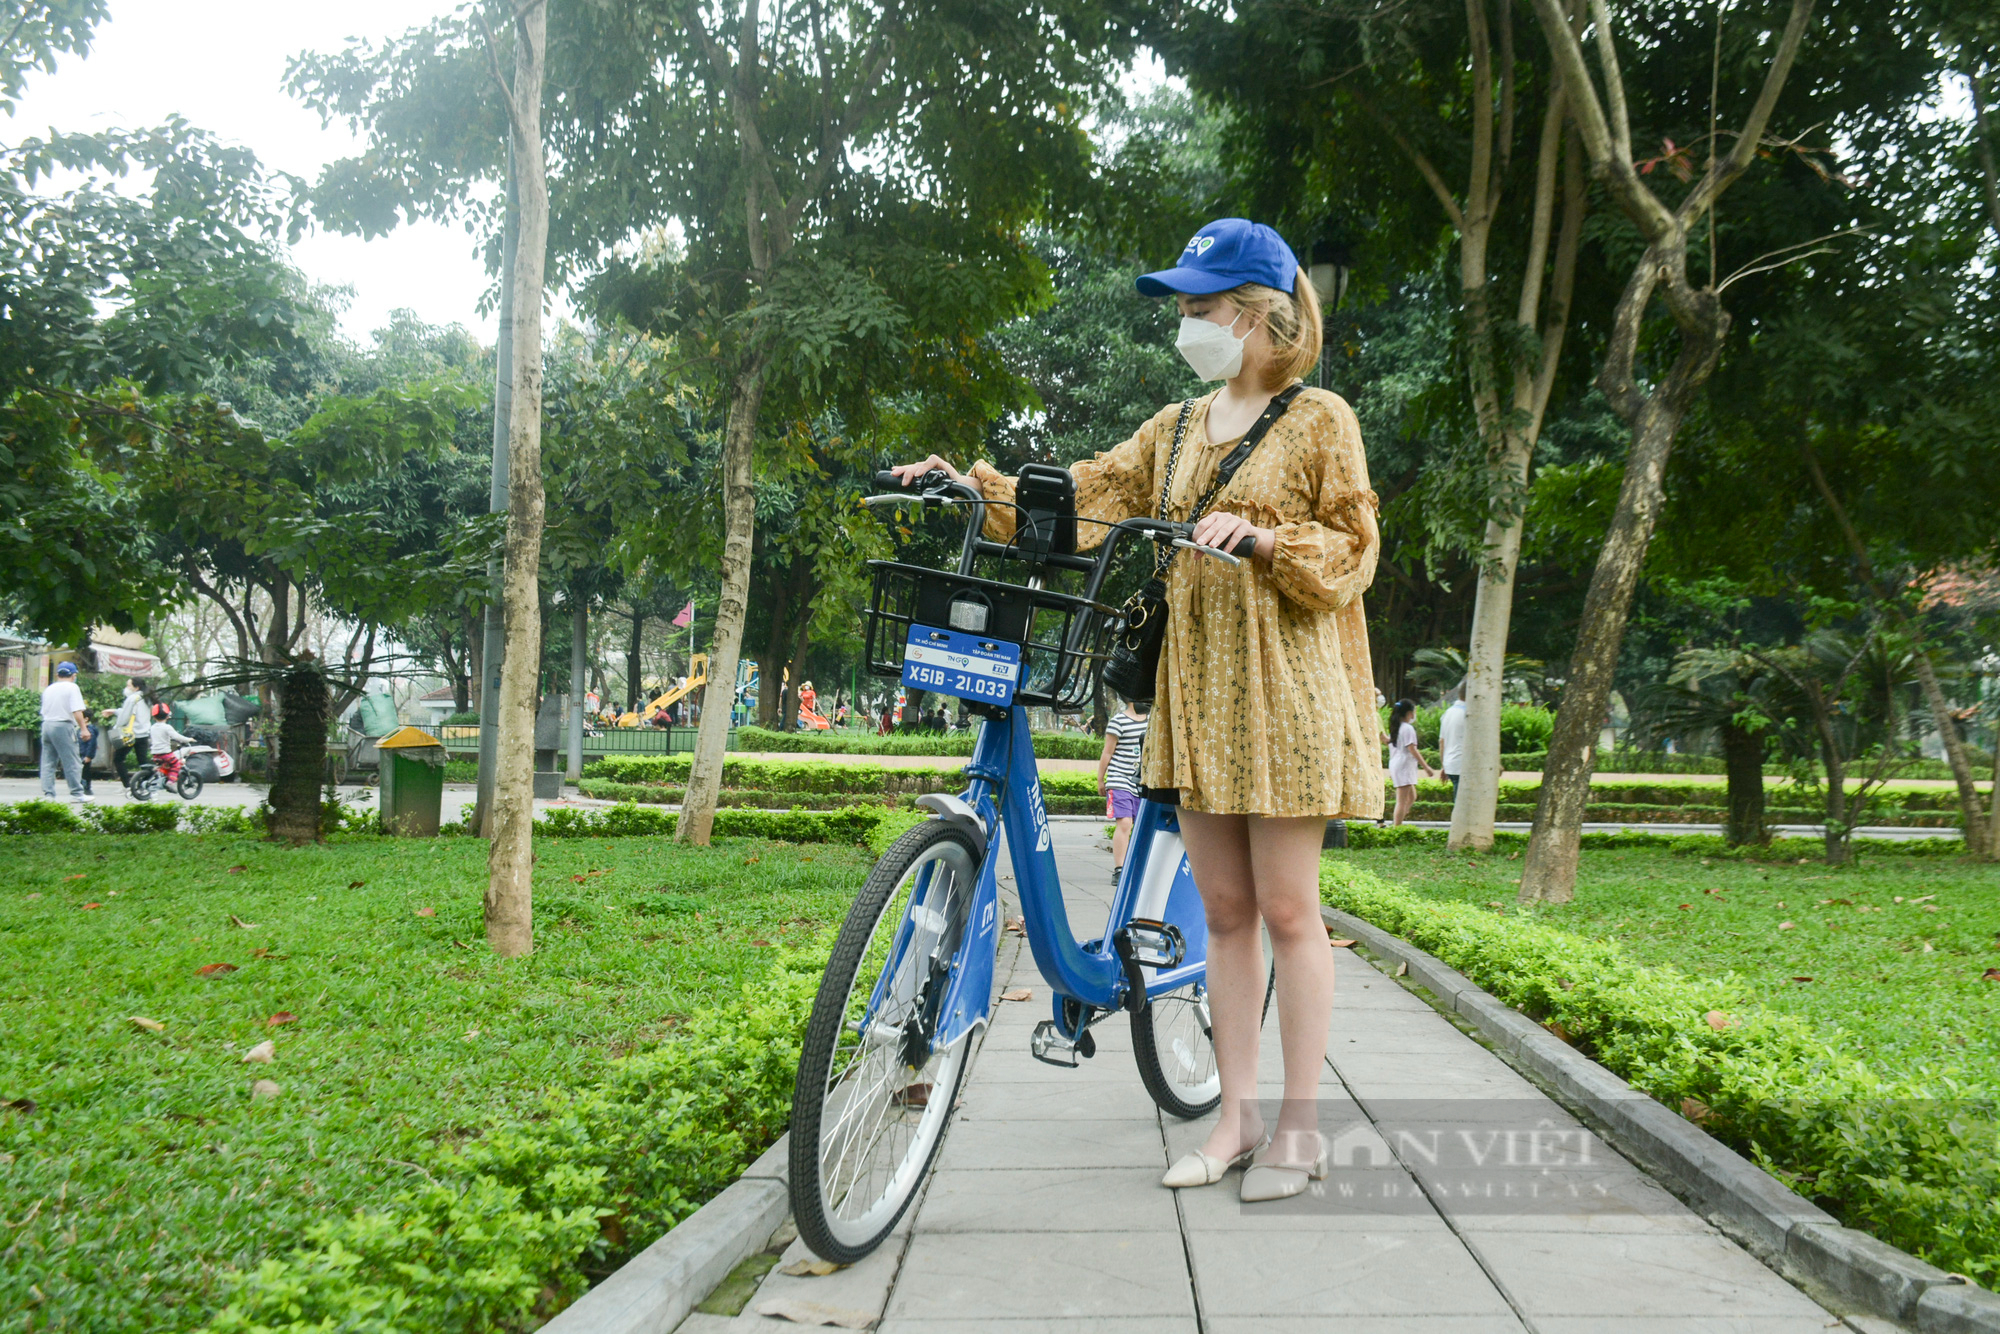 Xe đạp công cộng: Xe đạp công cộng là một phương tiện di chuyển phổ biến tại các thành phố lớn trên thế giới. Hình ảnh chụp xe đạp công cộng sẽ giúp bạn thấy được giá trị của phương tiện này trong việc giảm thiểu ùn tắc giao thông và ô nhiễm môi trường.